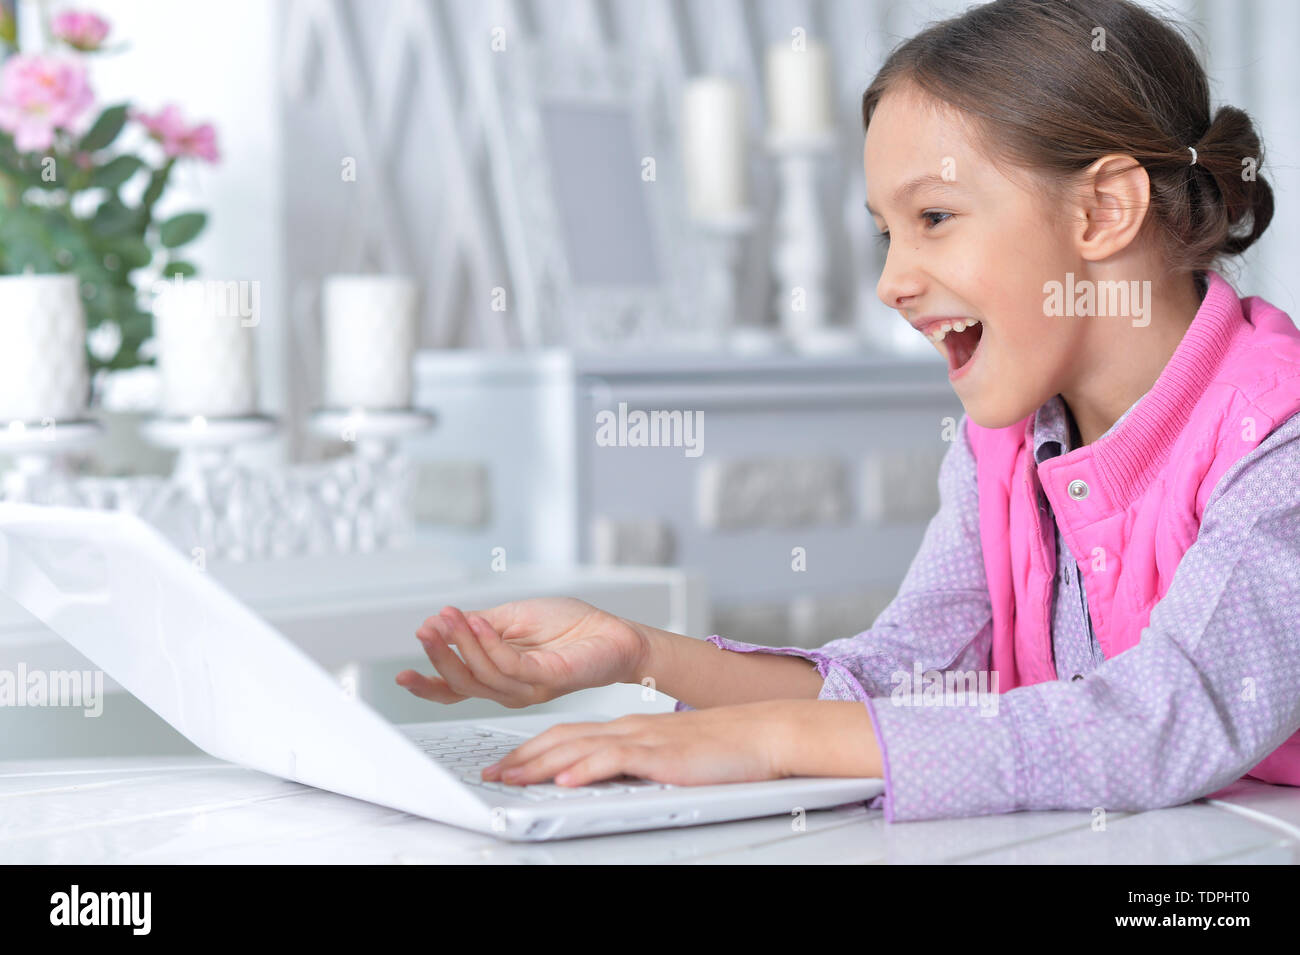 Retrato de cute little girl utilizando modernas laptop Foto de stock